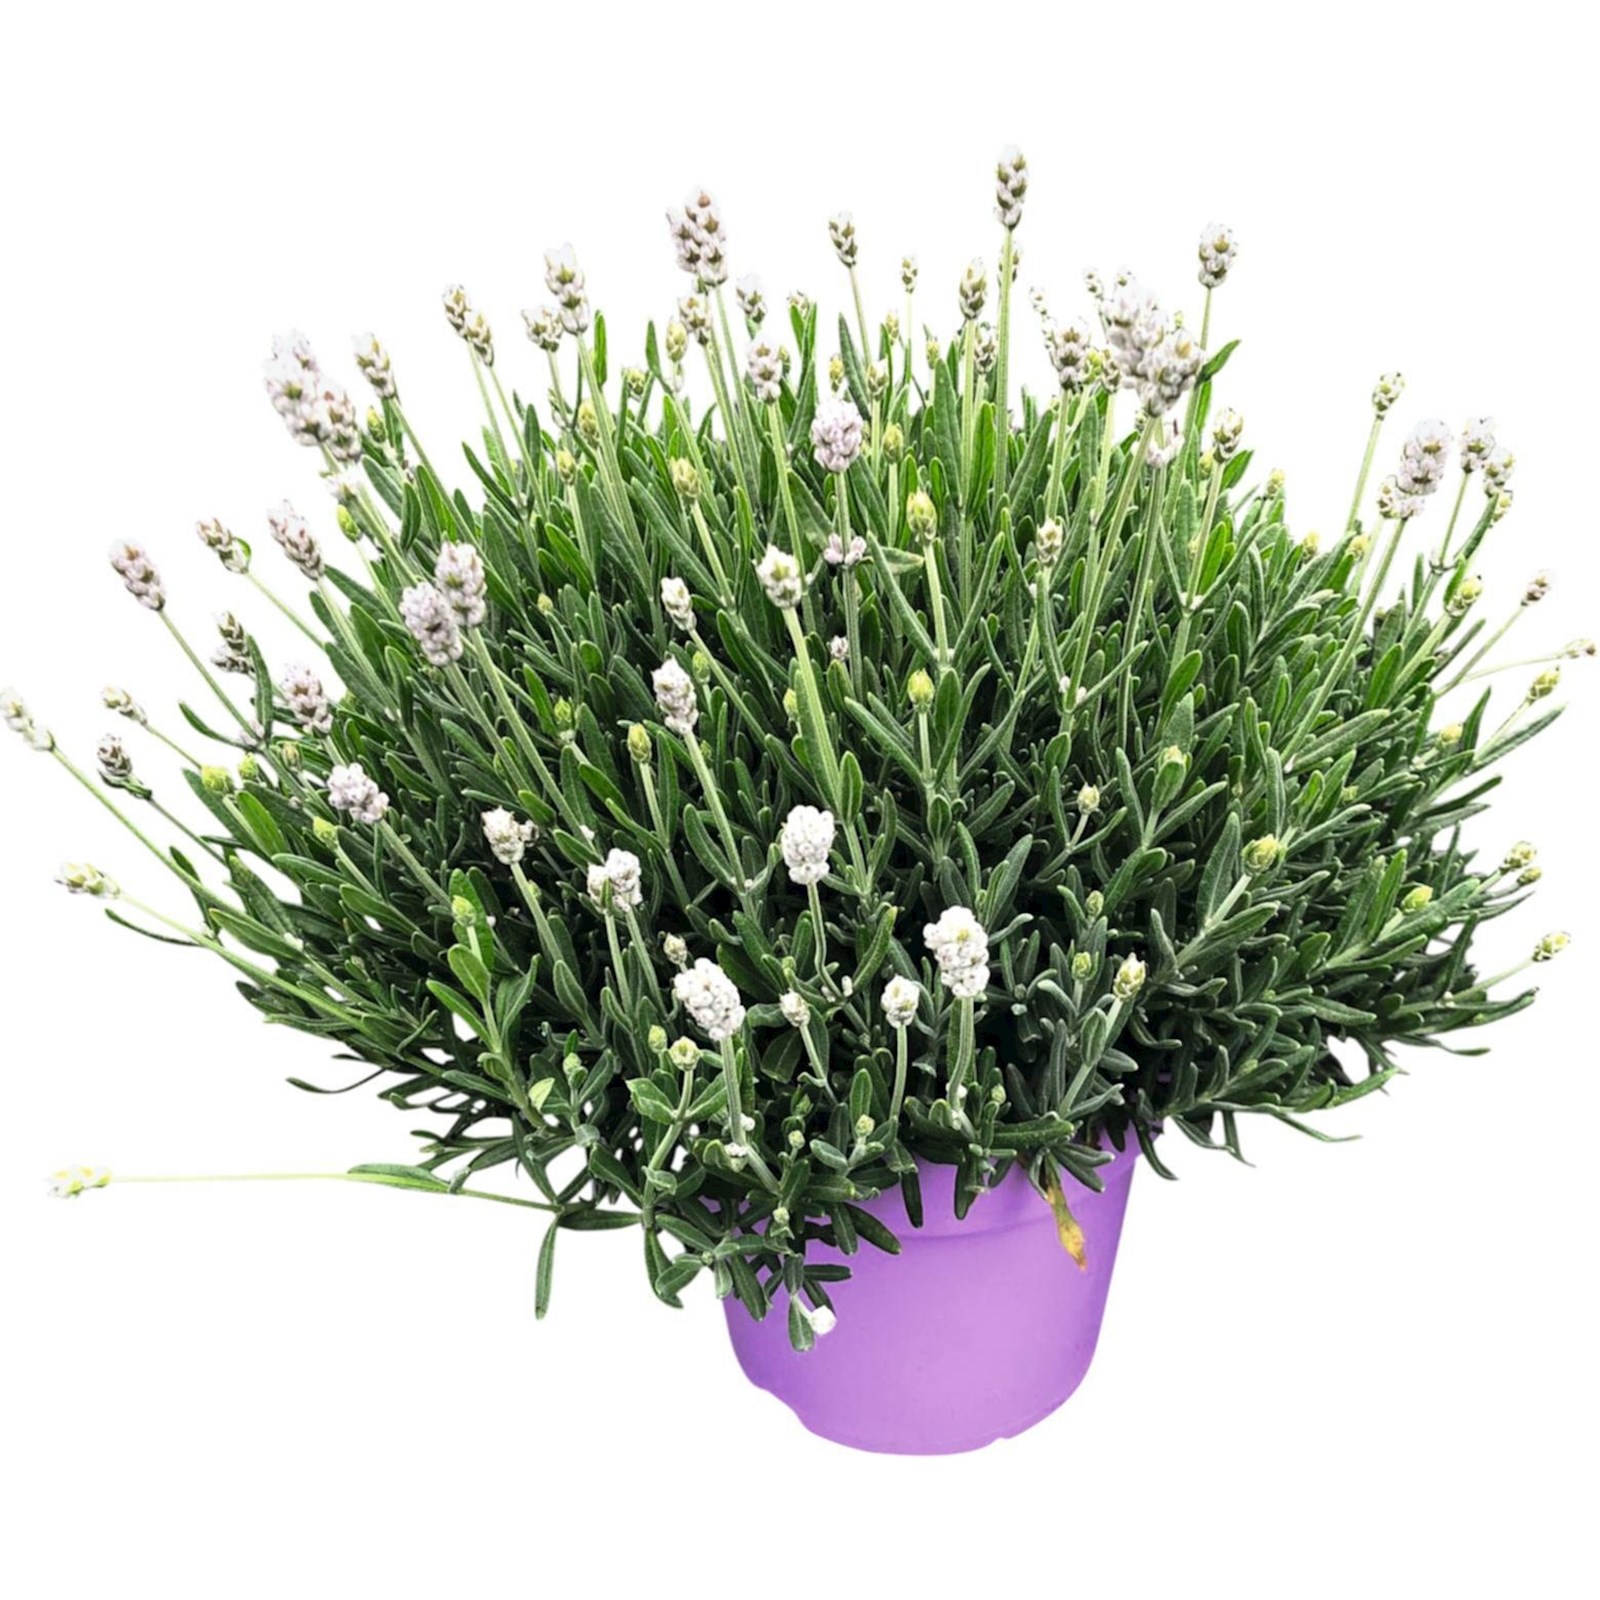 Lavendel Hidecote weiss P17 cm kaufen - Kletterpflanzen u. mehrjährige  Pflanzen - LANDI